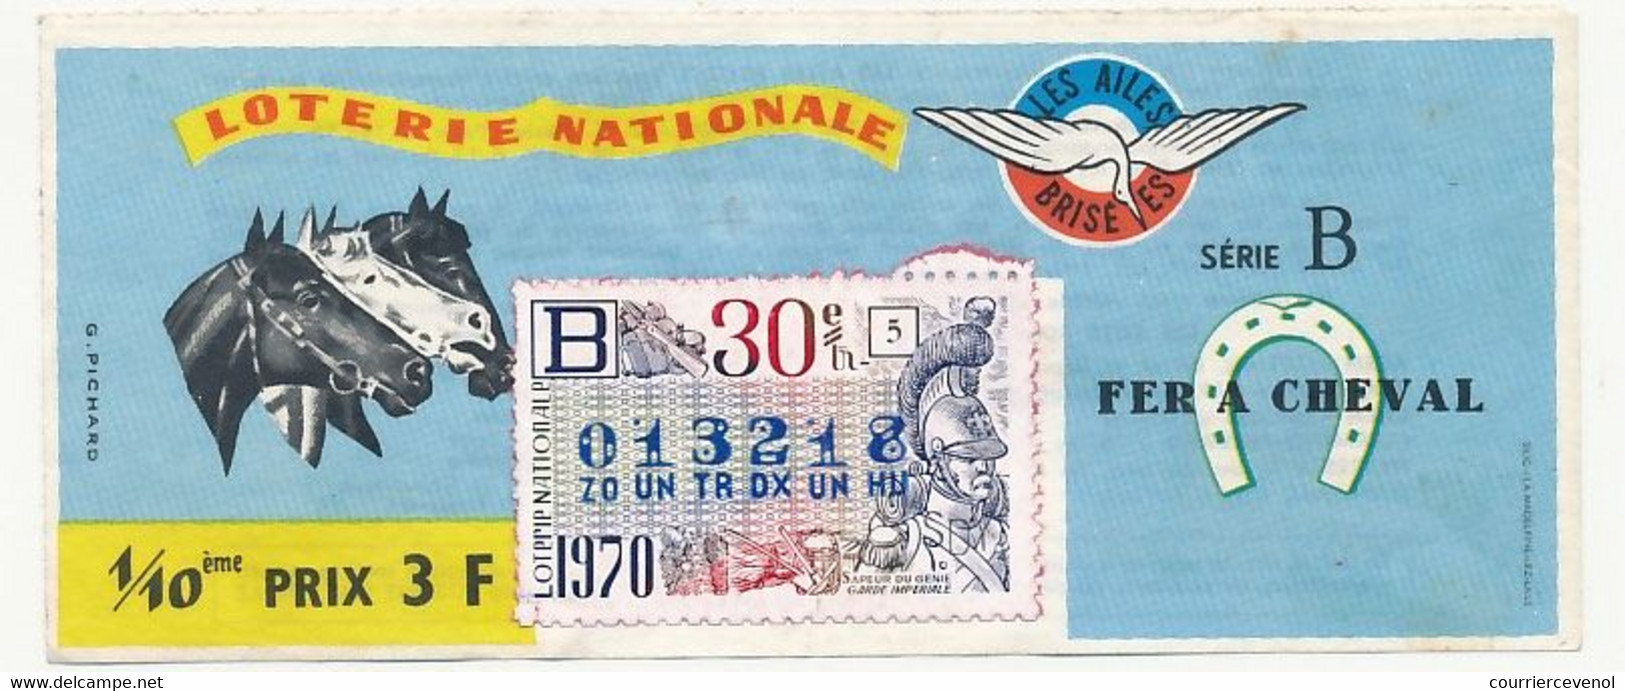 FRANCE - Loterie Nationale - 1/10ème - Les Ailes Brisées - Fer à Cheval  - 30eme Tranche 1970 - Lottery Tickets